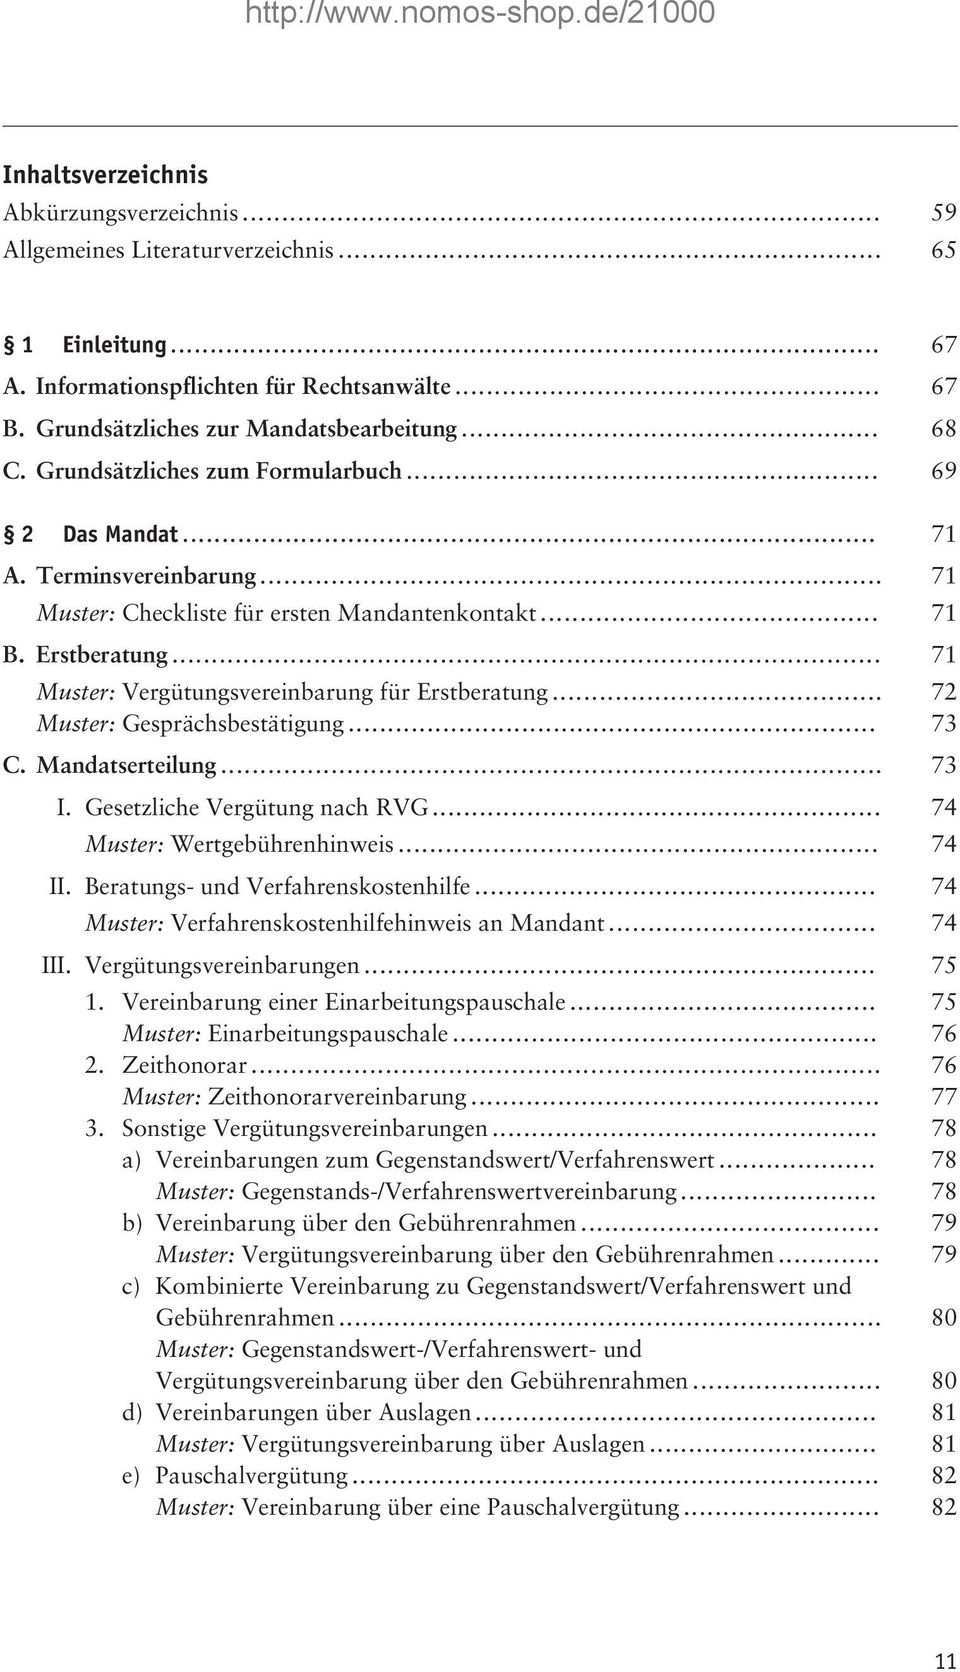 Nomosformulare Meyer Gotz Hrsg Familienrecht Vereinbarungen Verfahren Aussergerichtliche Korrespondenz 3 Auflage Nomos Pdf Free Download